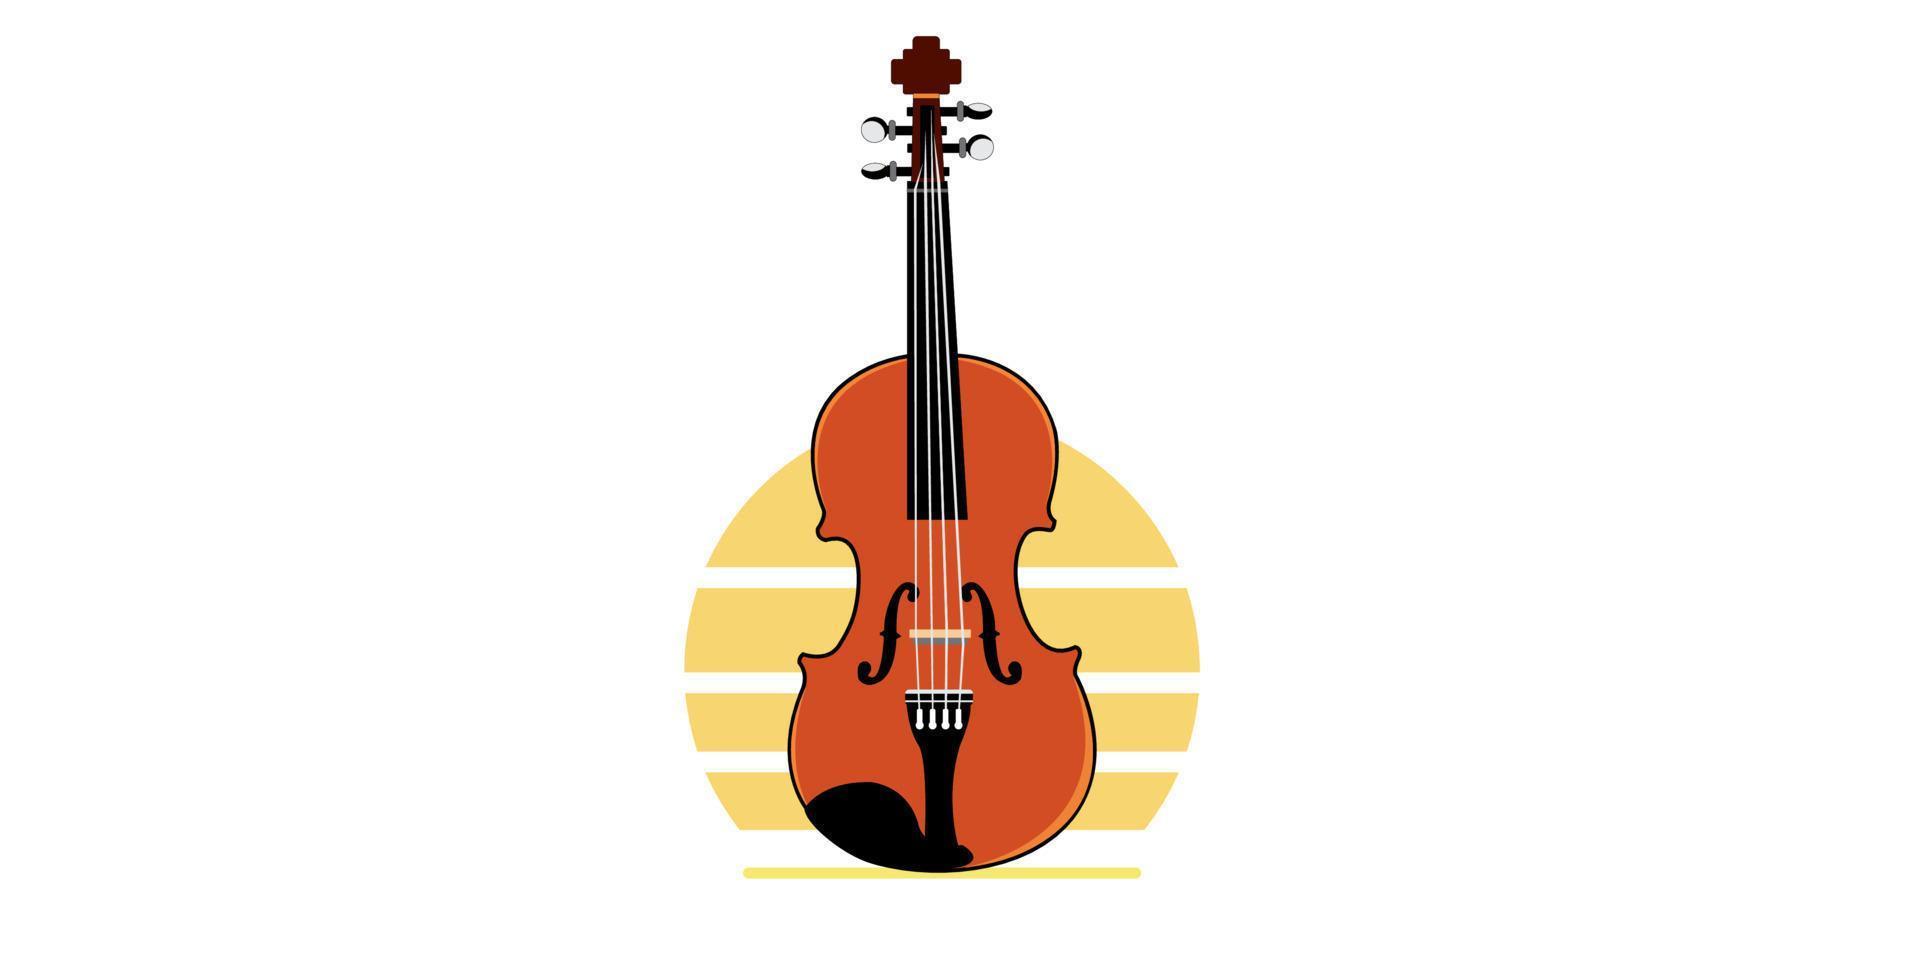 violin musikinstrument vektor